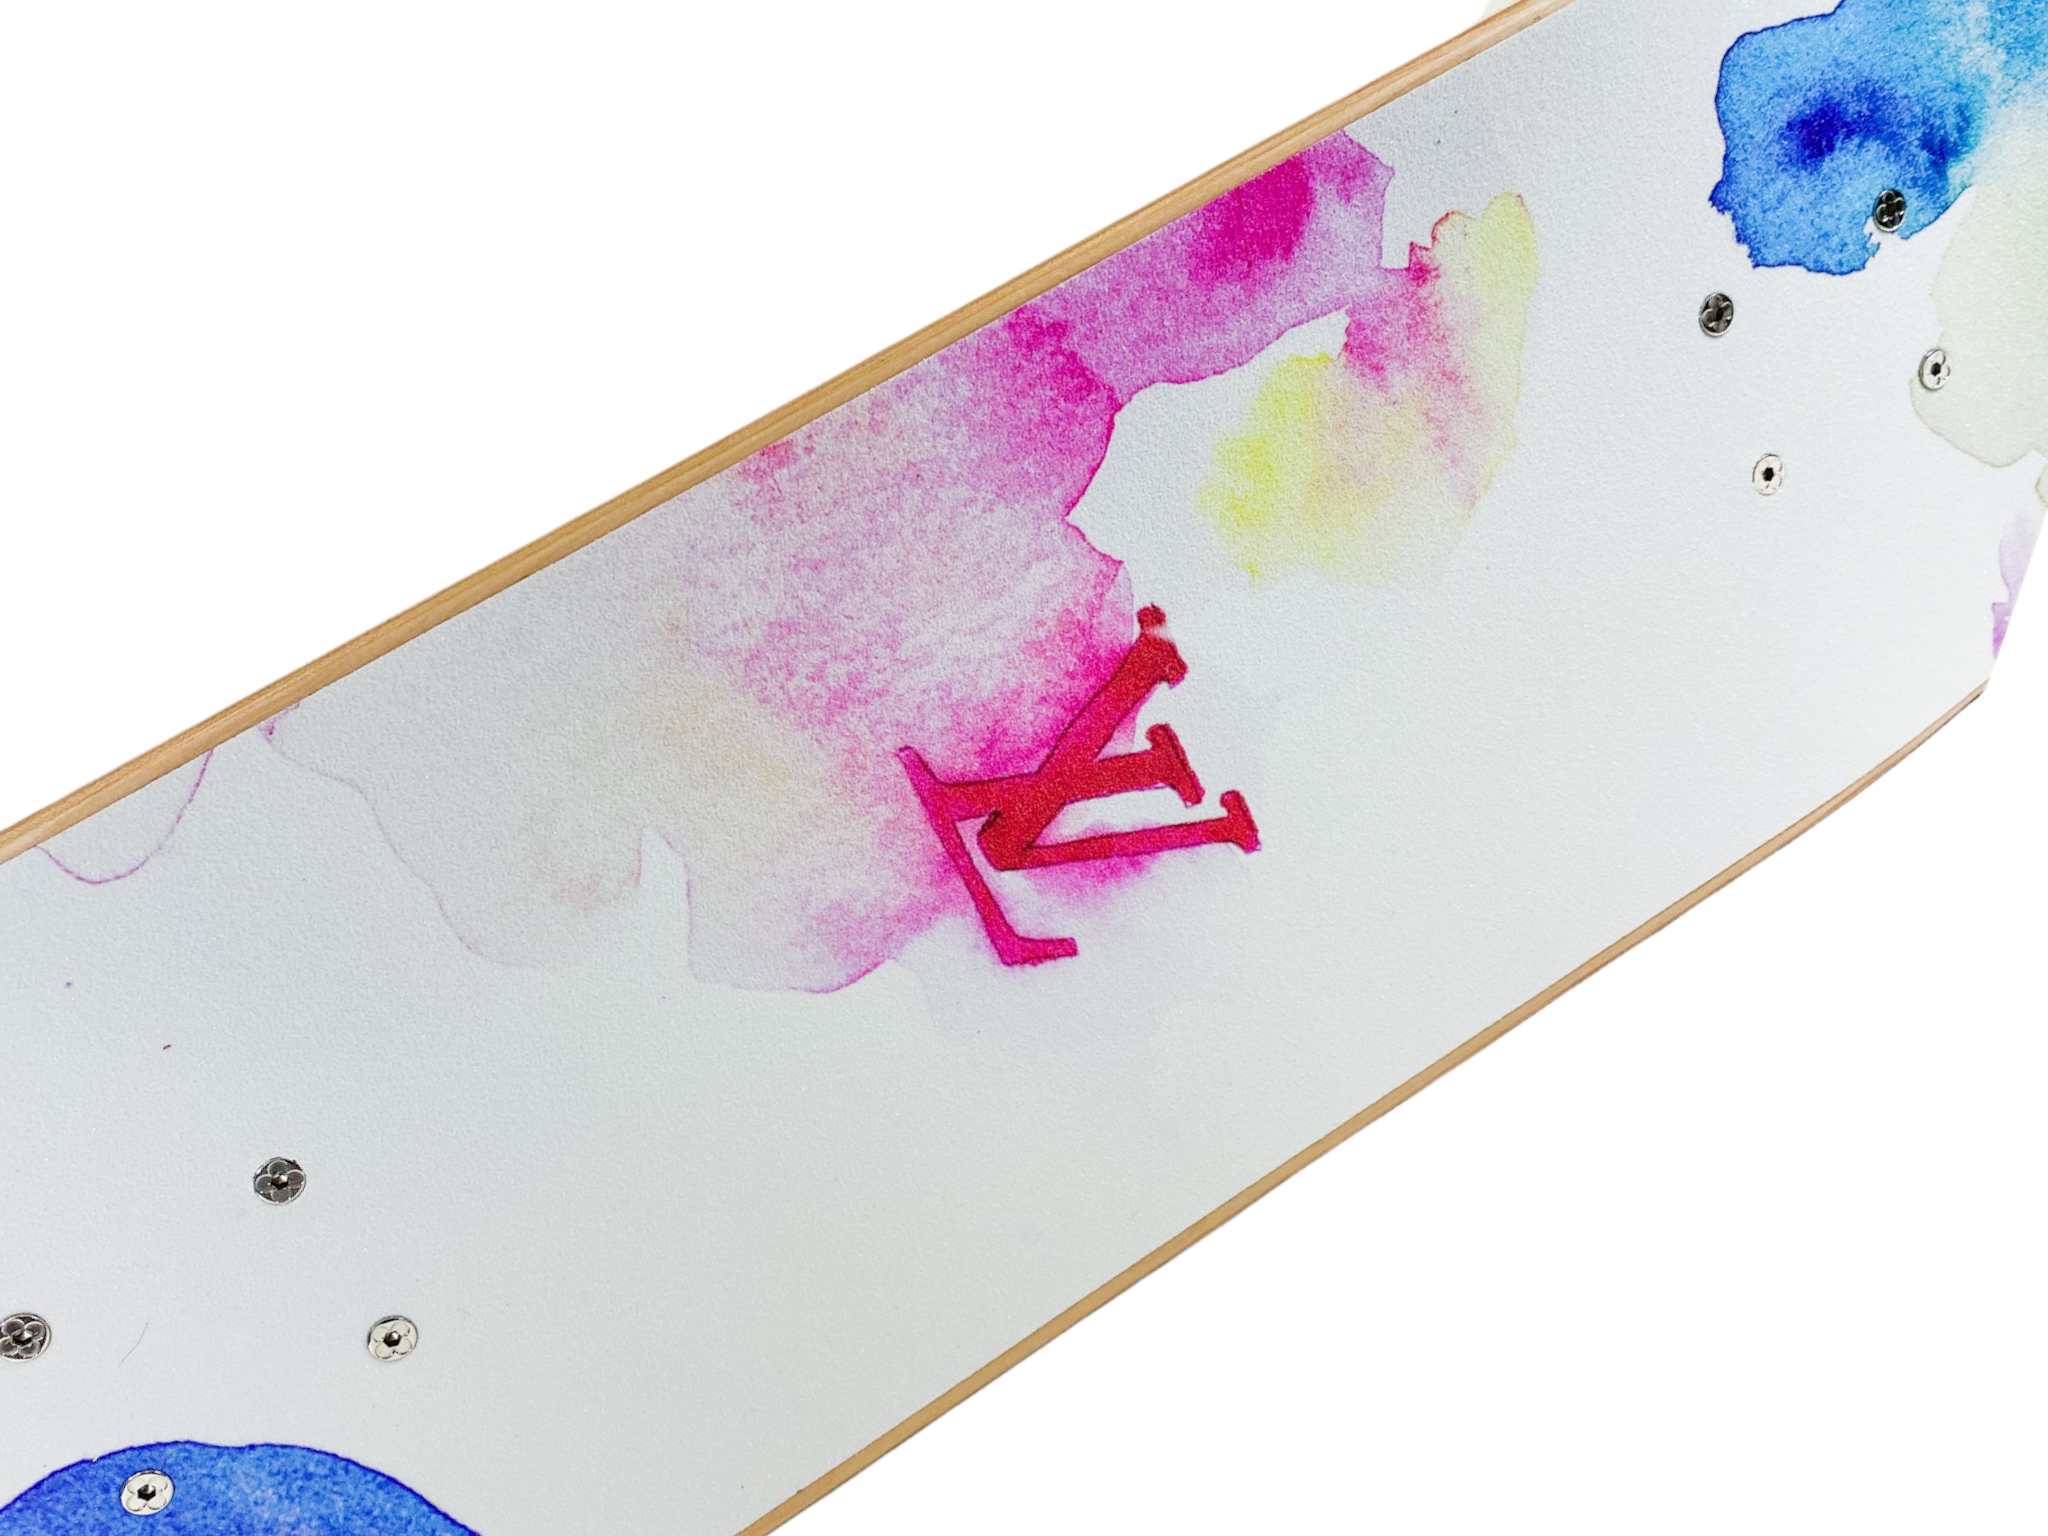 Louis Vuitton Watercolor Monogram Skateboard w/ Tags - White Skate Decks,  Collectibles - LOU684787